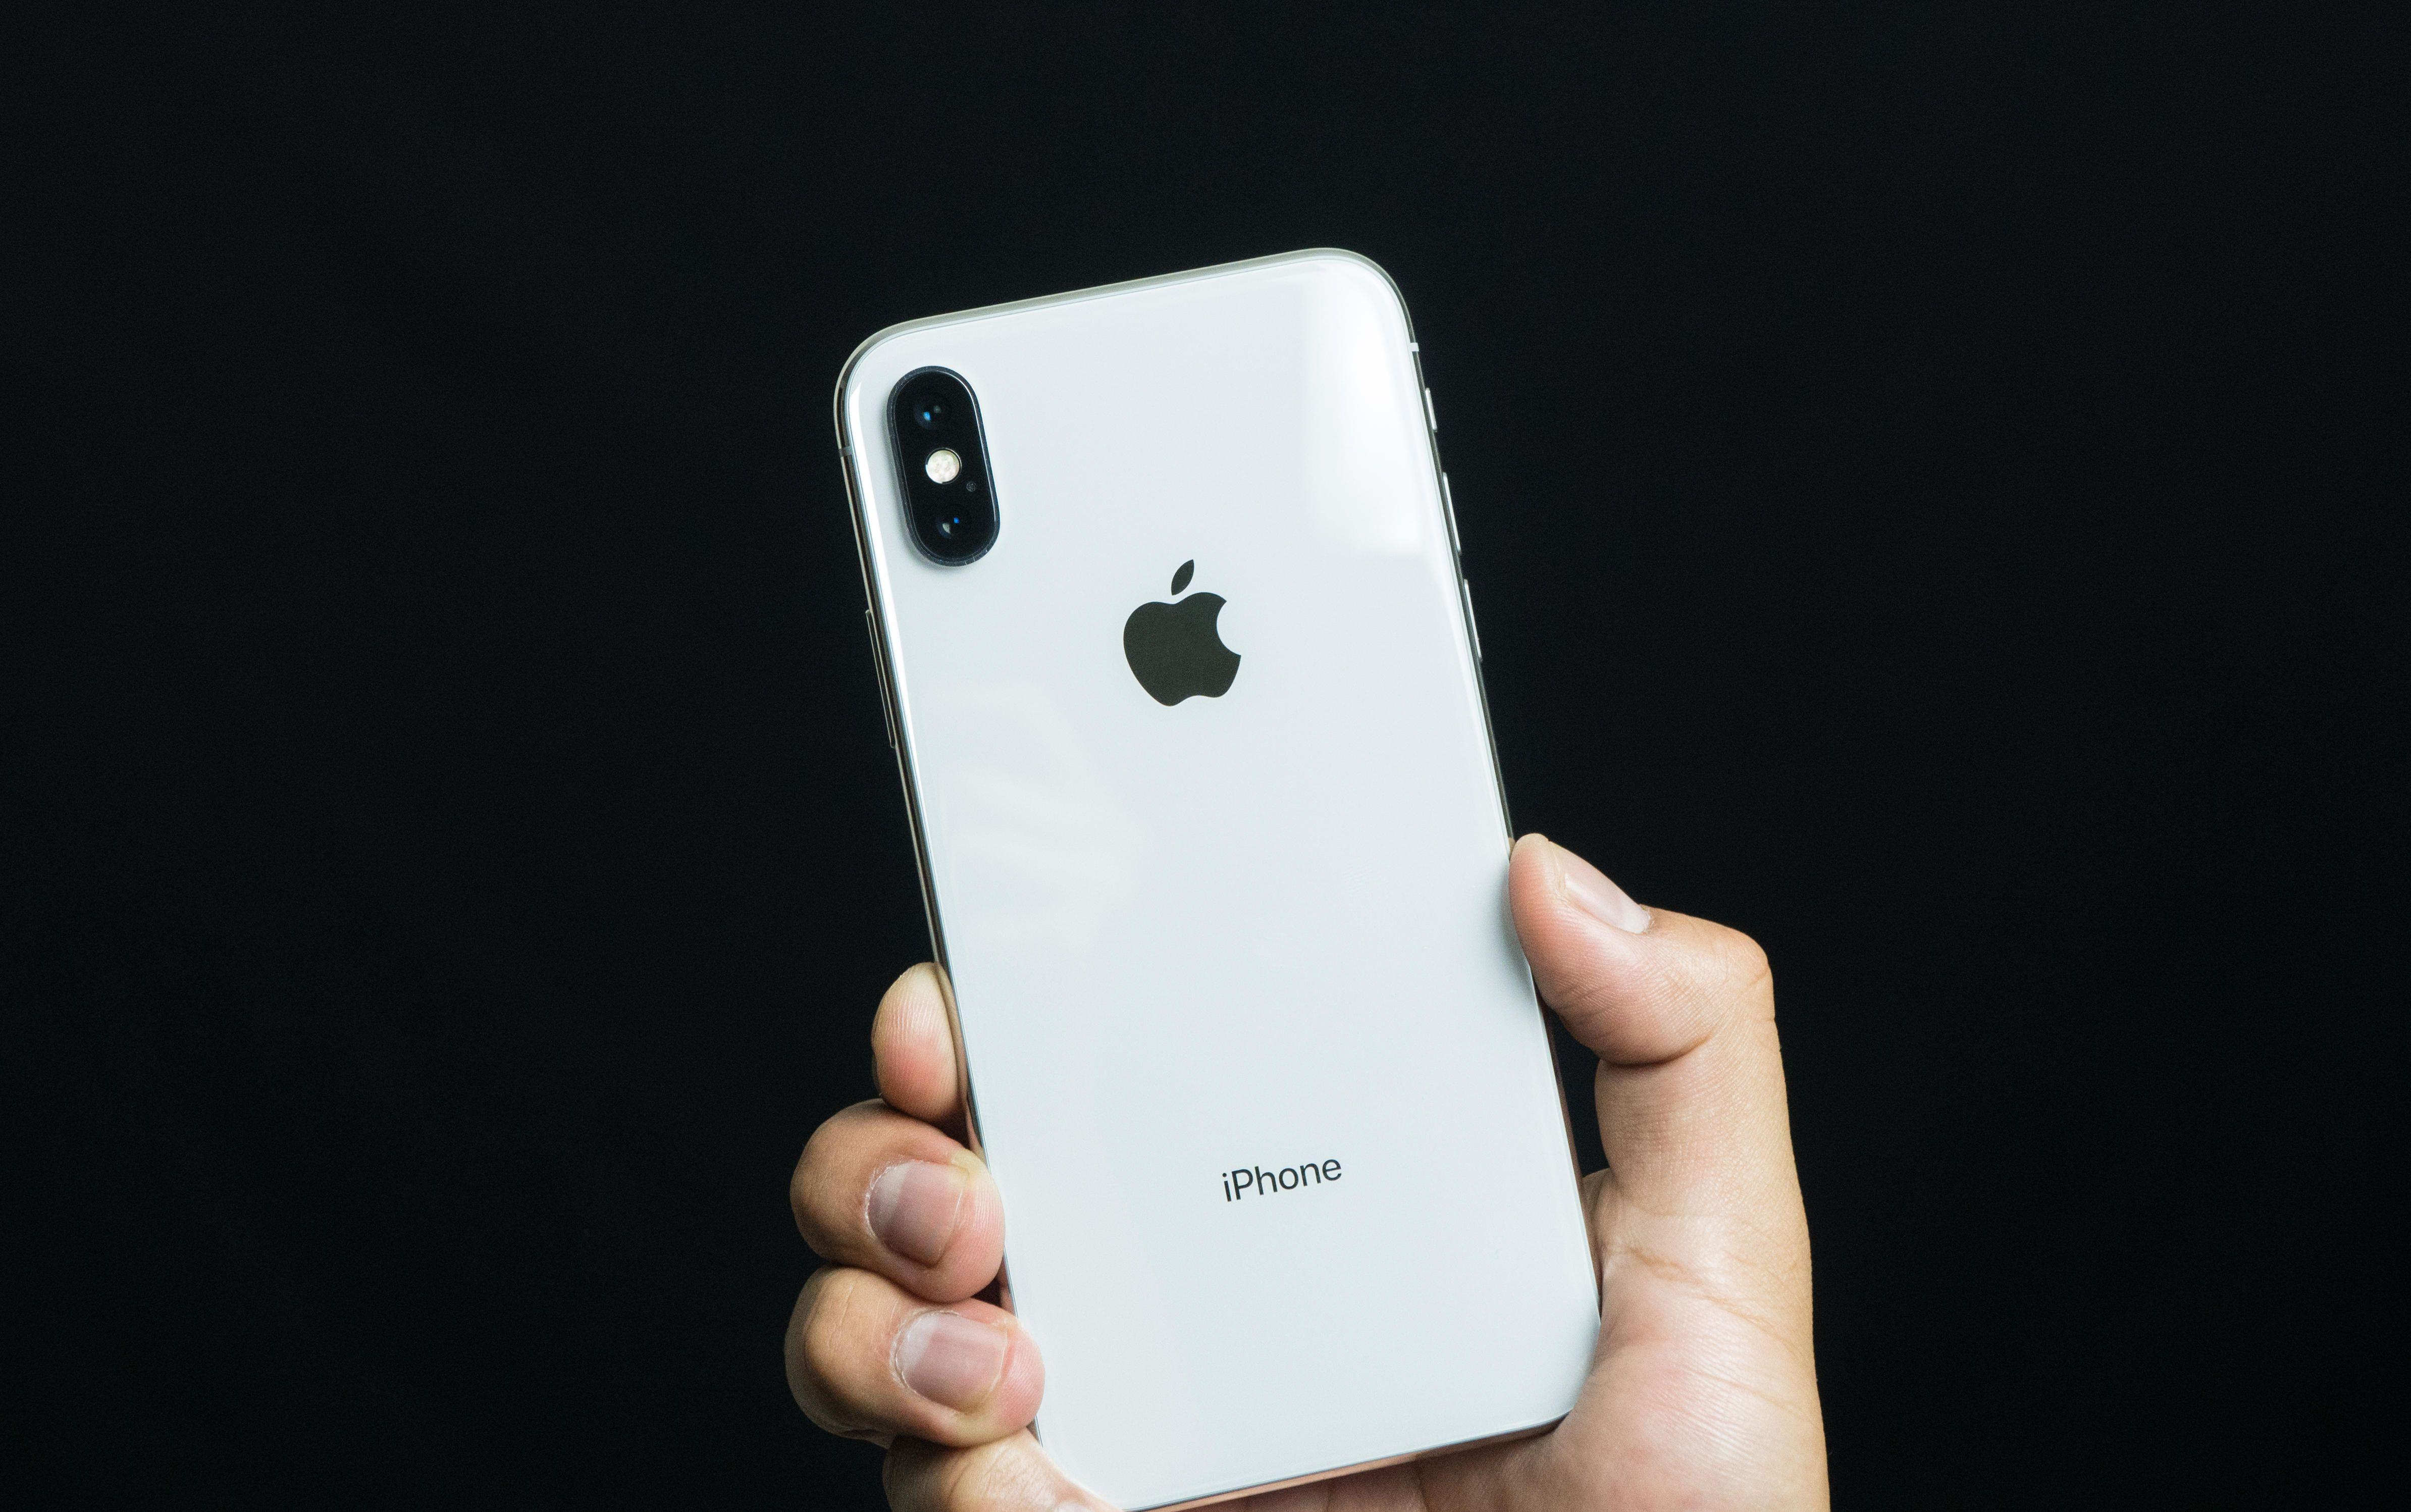 Apple no incluiría “cuerno” en iPhone de 2019